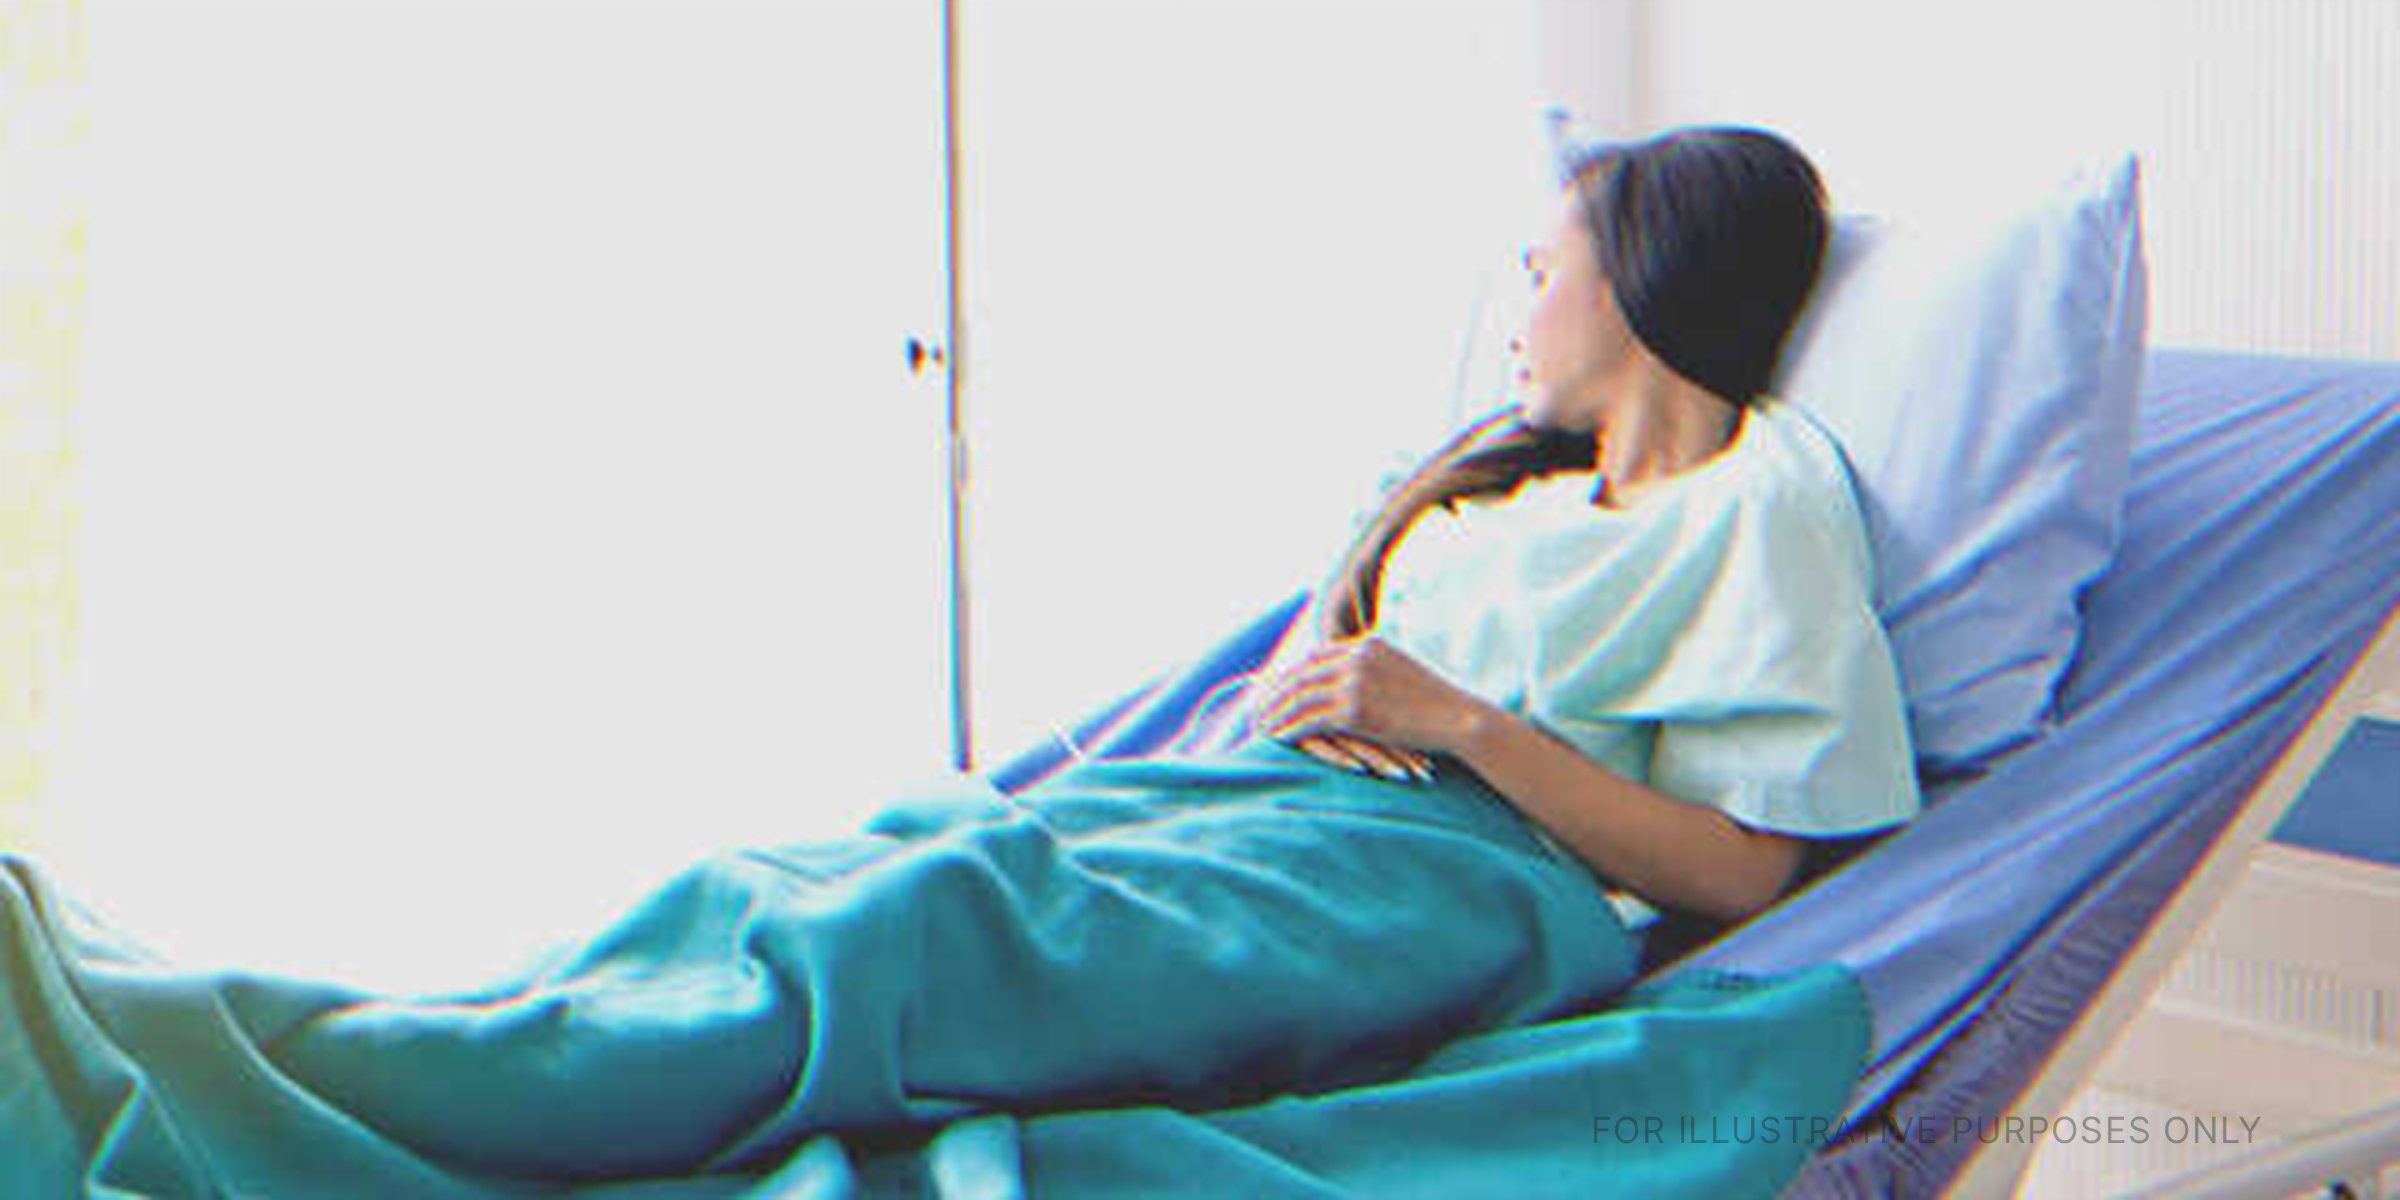 Woman in hospital | Source: Shutterstock 